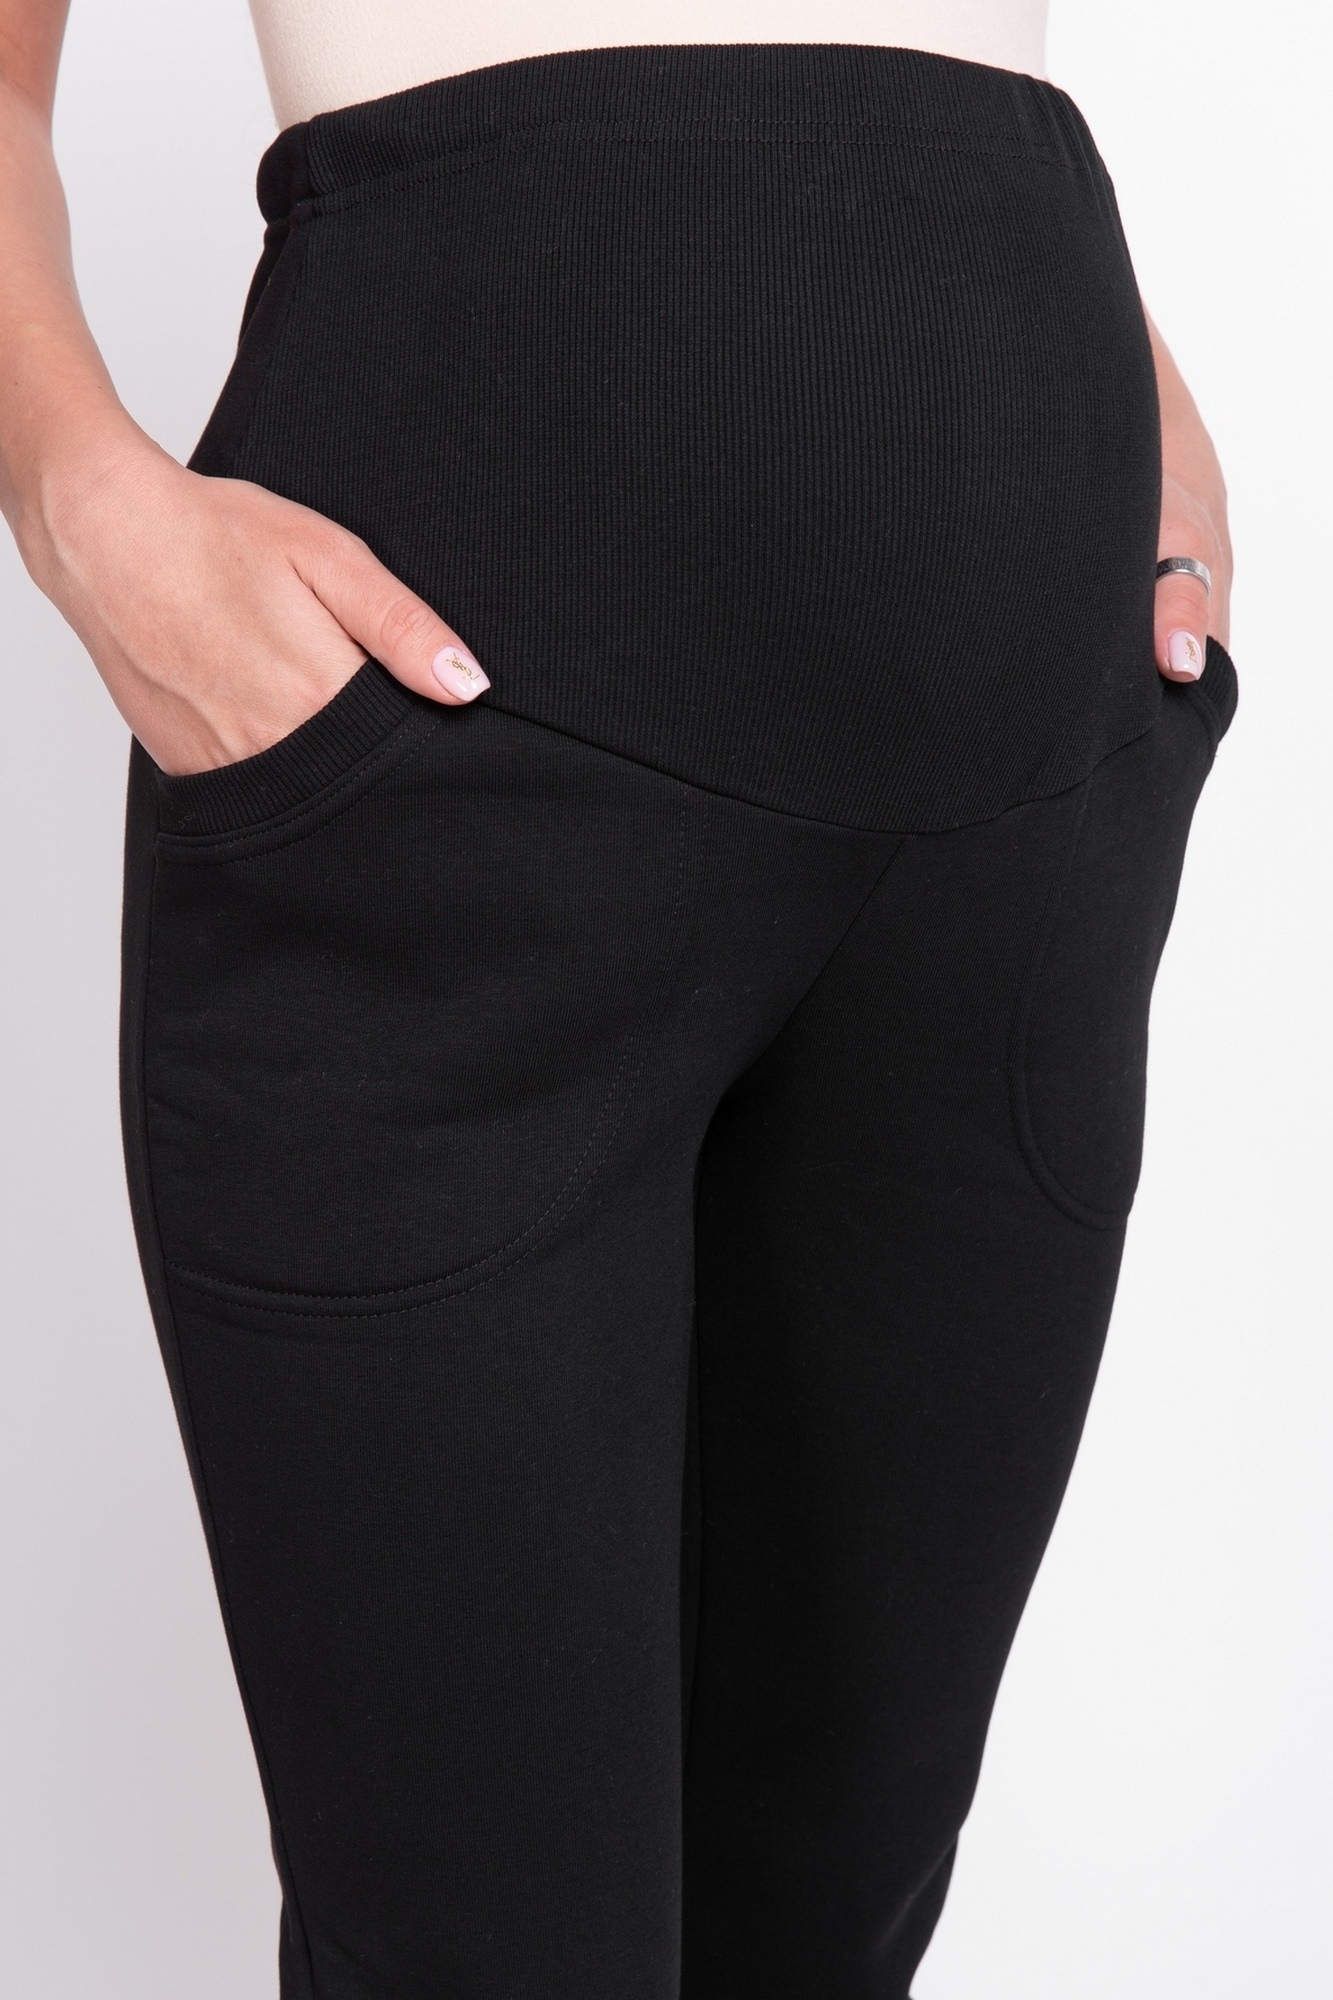 возможна ли переделка брюк для беременных такого типа в обычные?